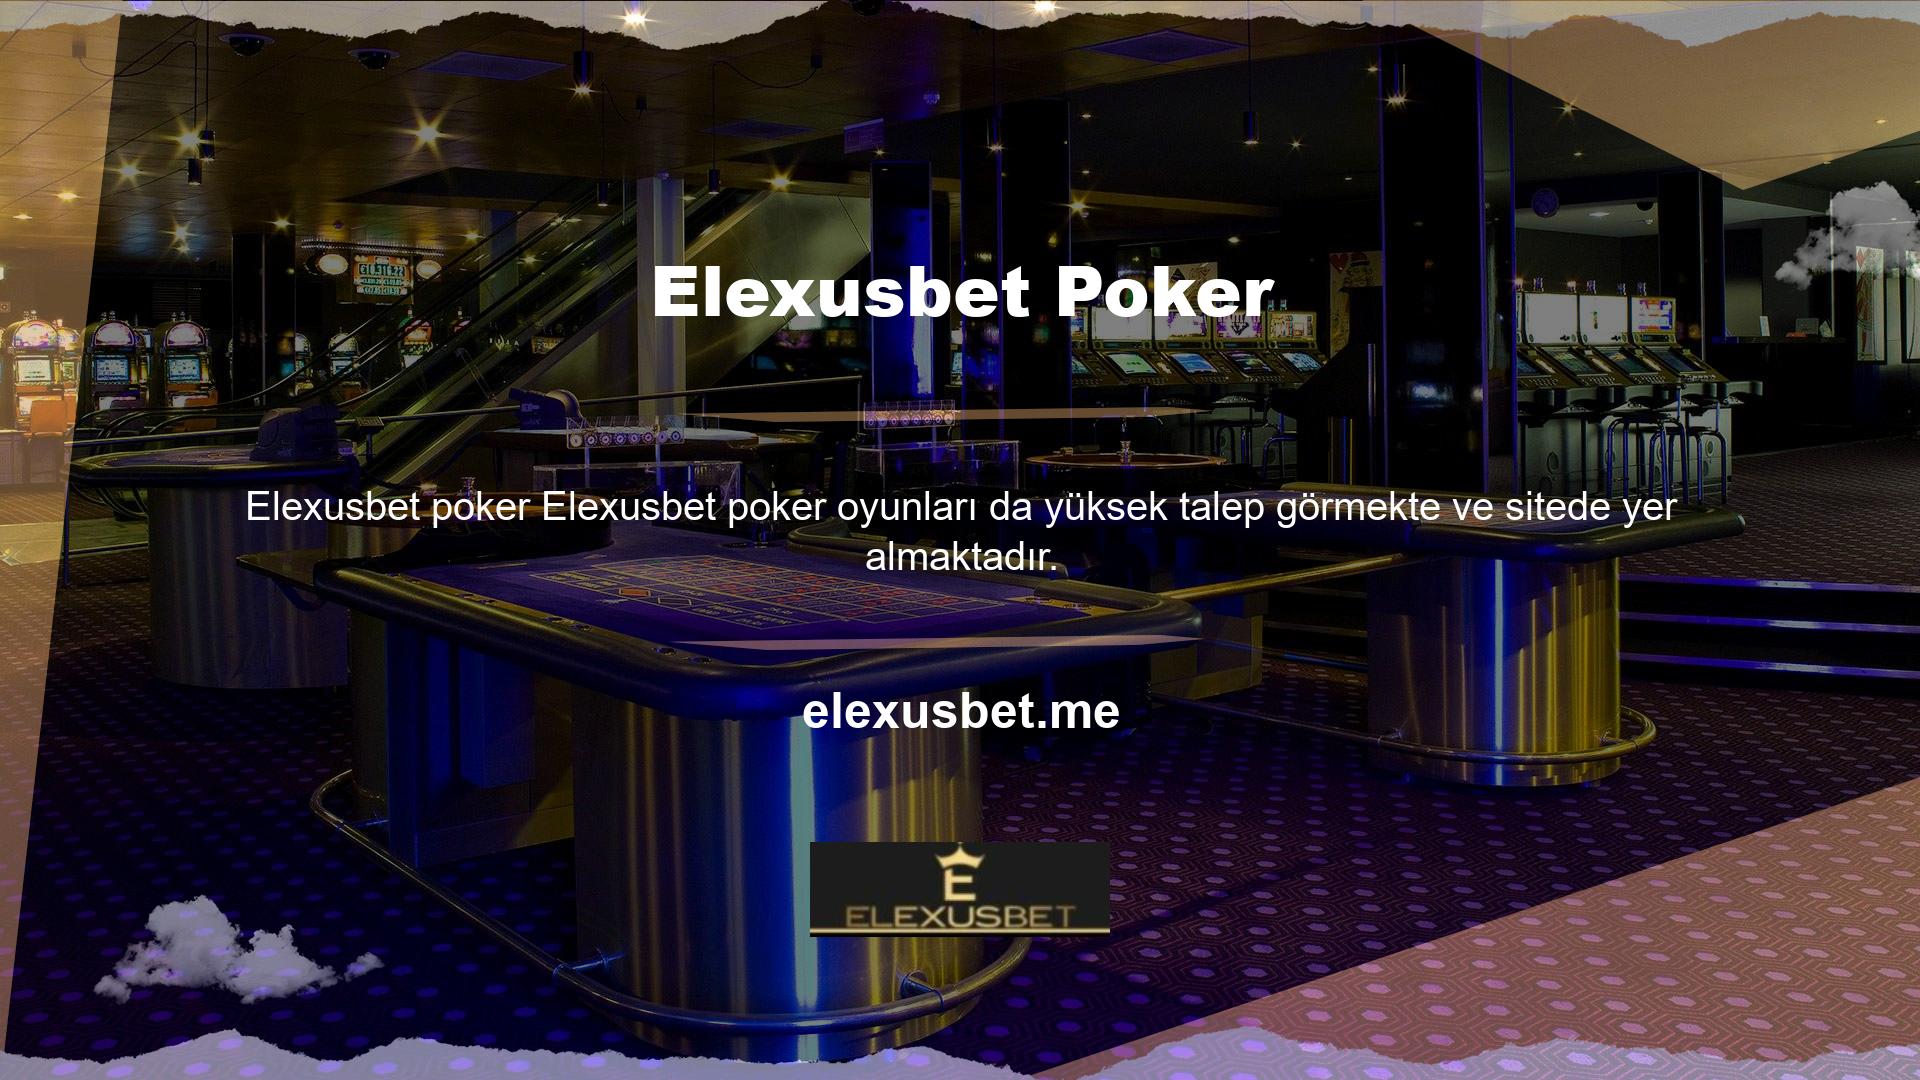 Casino oyunları söz konusu olduğunda, poker bir zorunluluktur